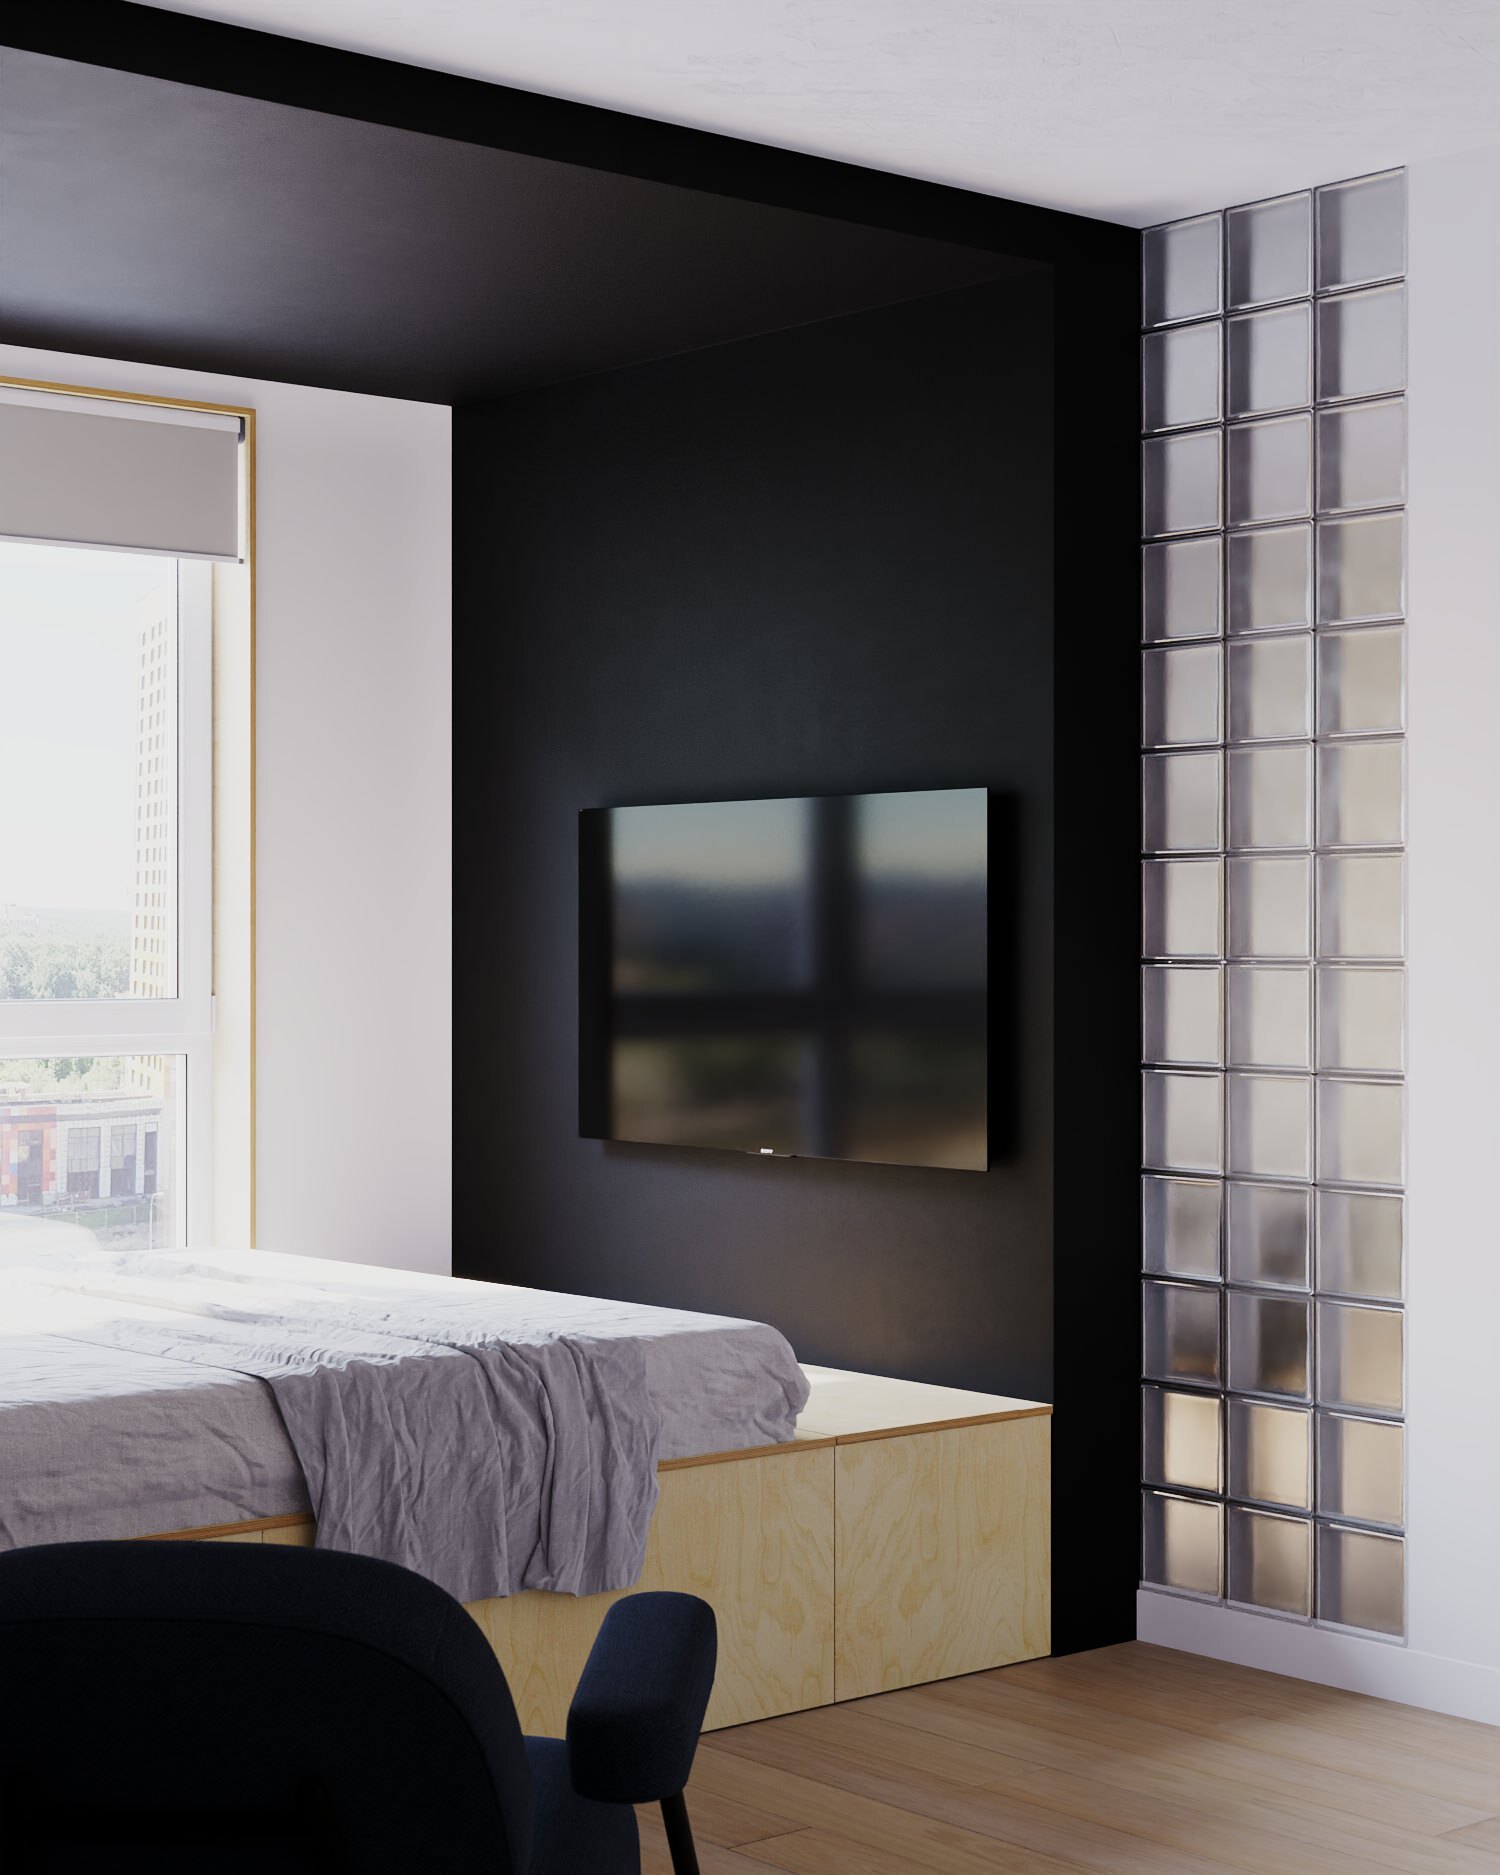 Интерьер спальни cтеной с телевизором, телевизором на стене, нишей для телевизора и керамогранитом на стену с телевизором в современном стиле